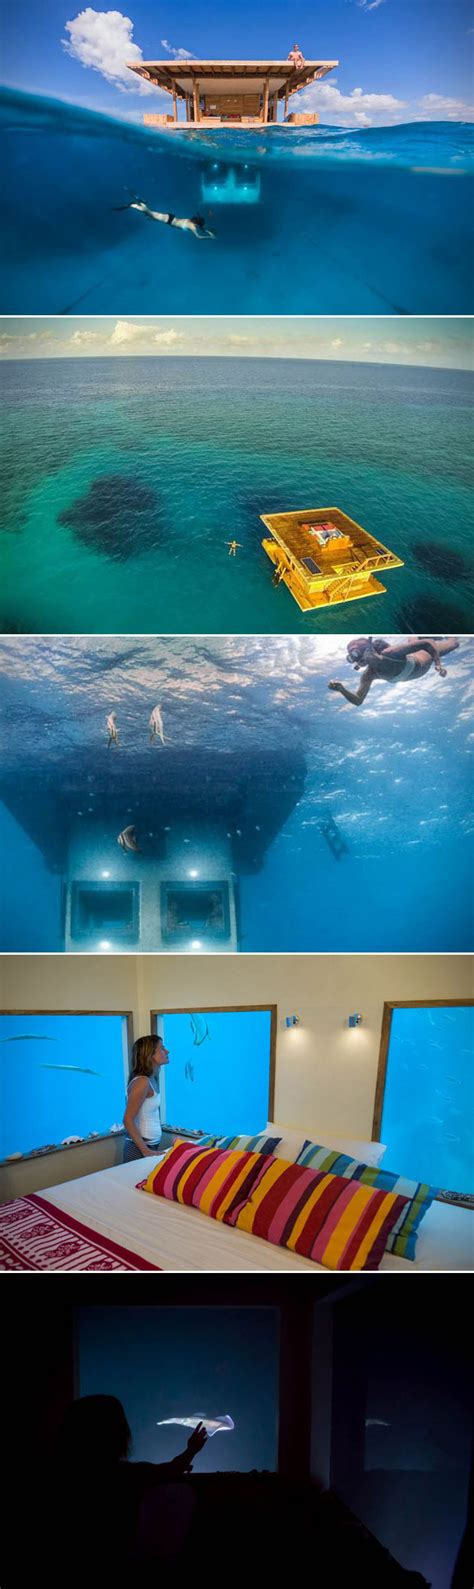 Manta Resort Underwater Room And 5 More Incredible Underwater Hotel